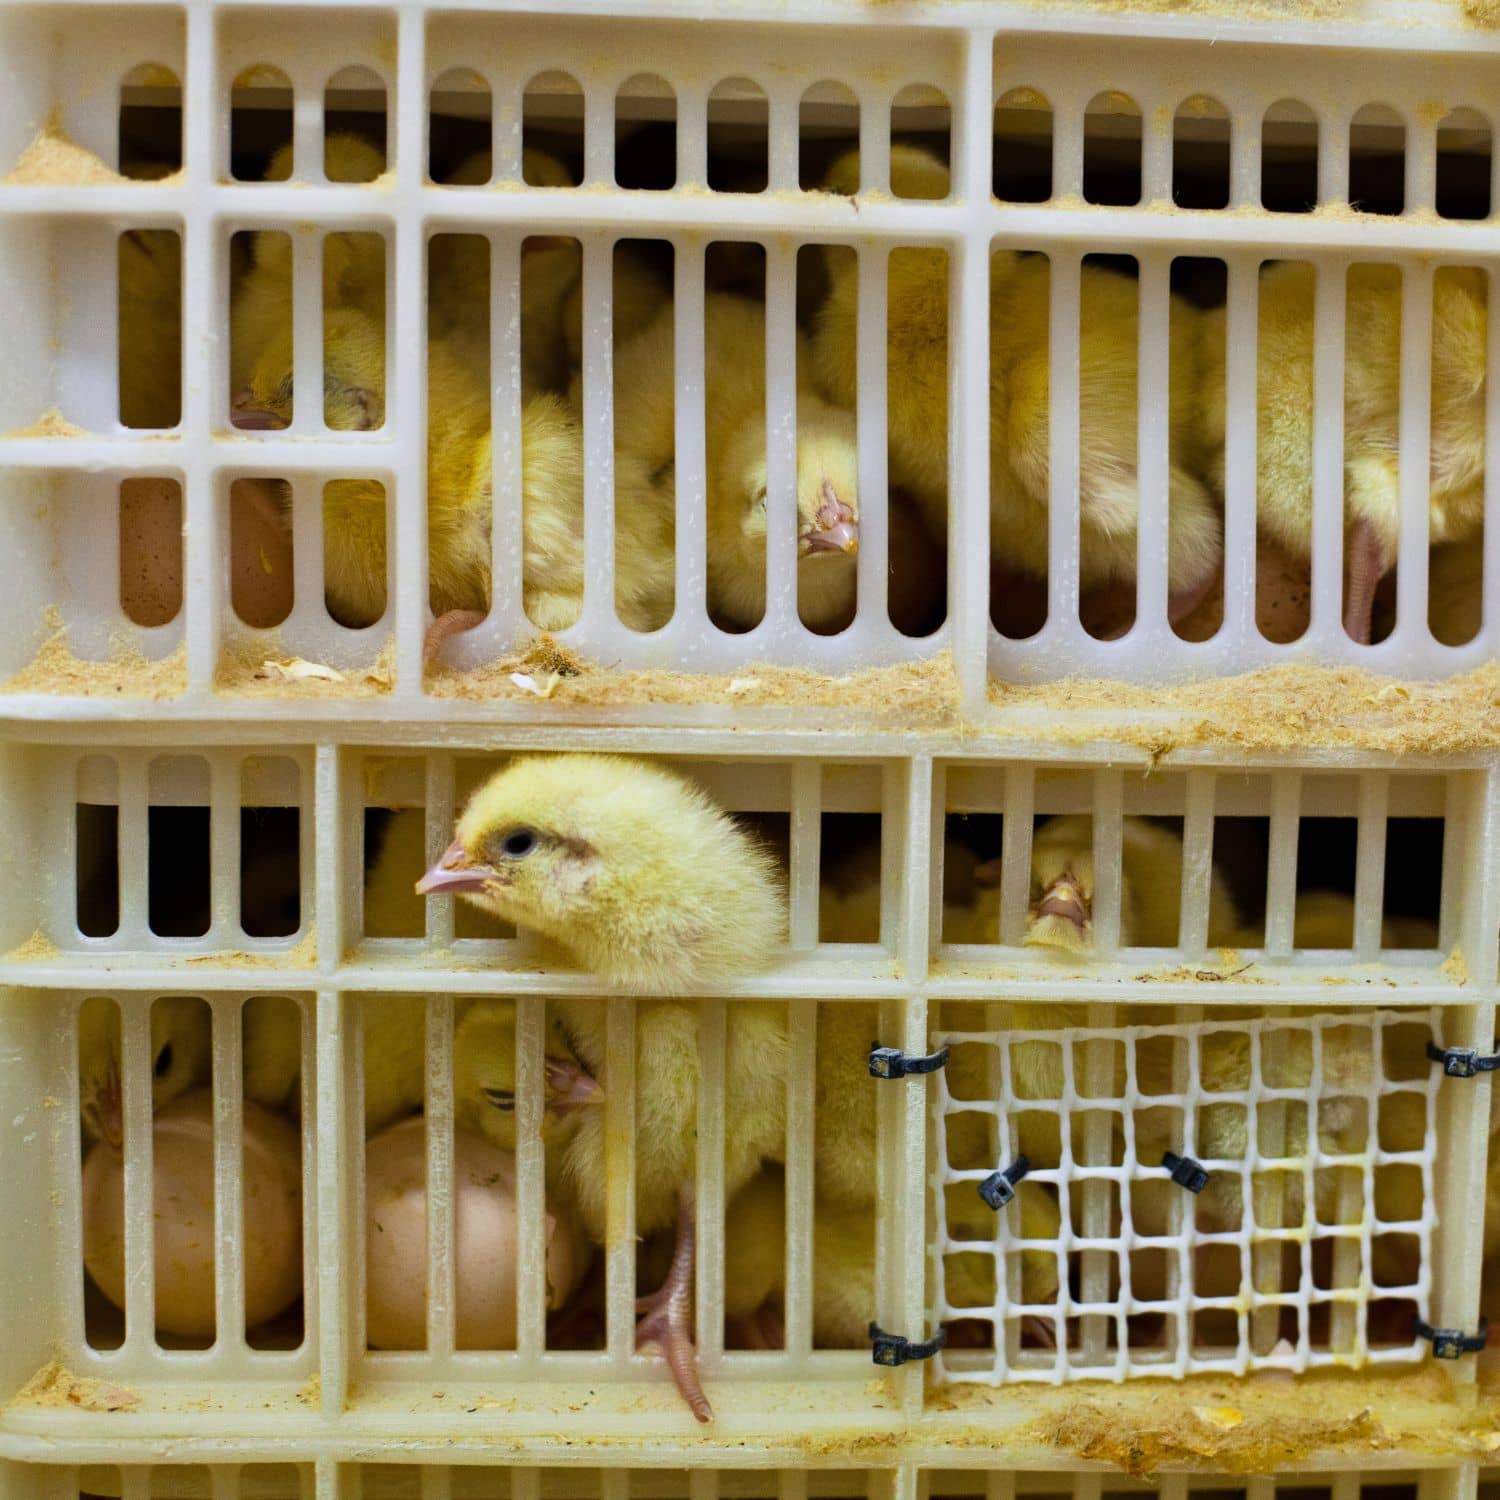 Un pollito asoma la cabeza por la abertura de un contenedor de plástico dentro del cual hay otros pollitos vivos.